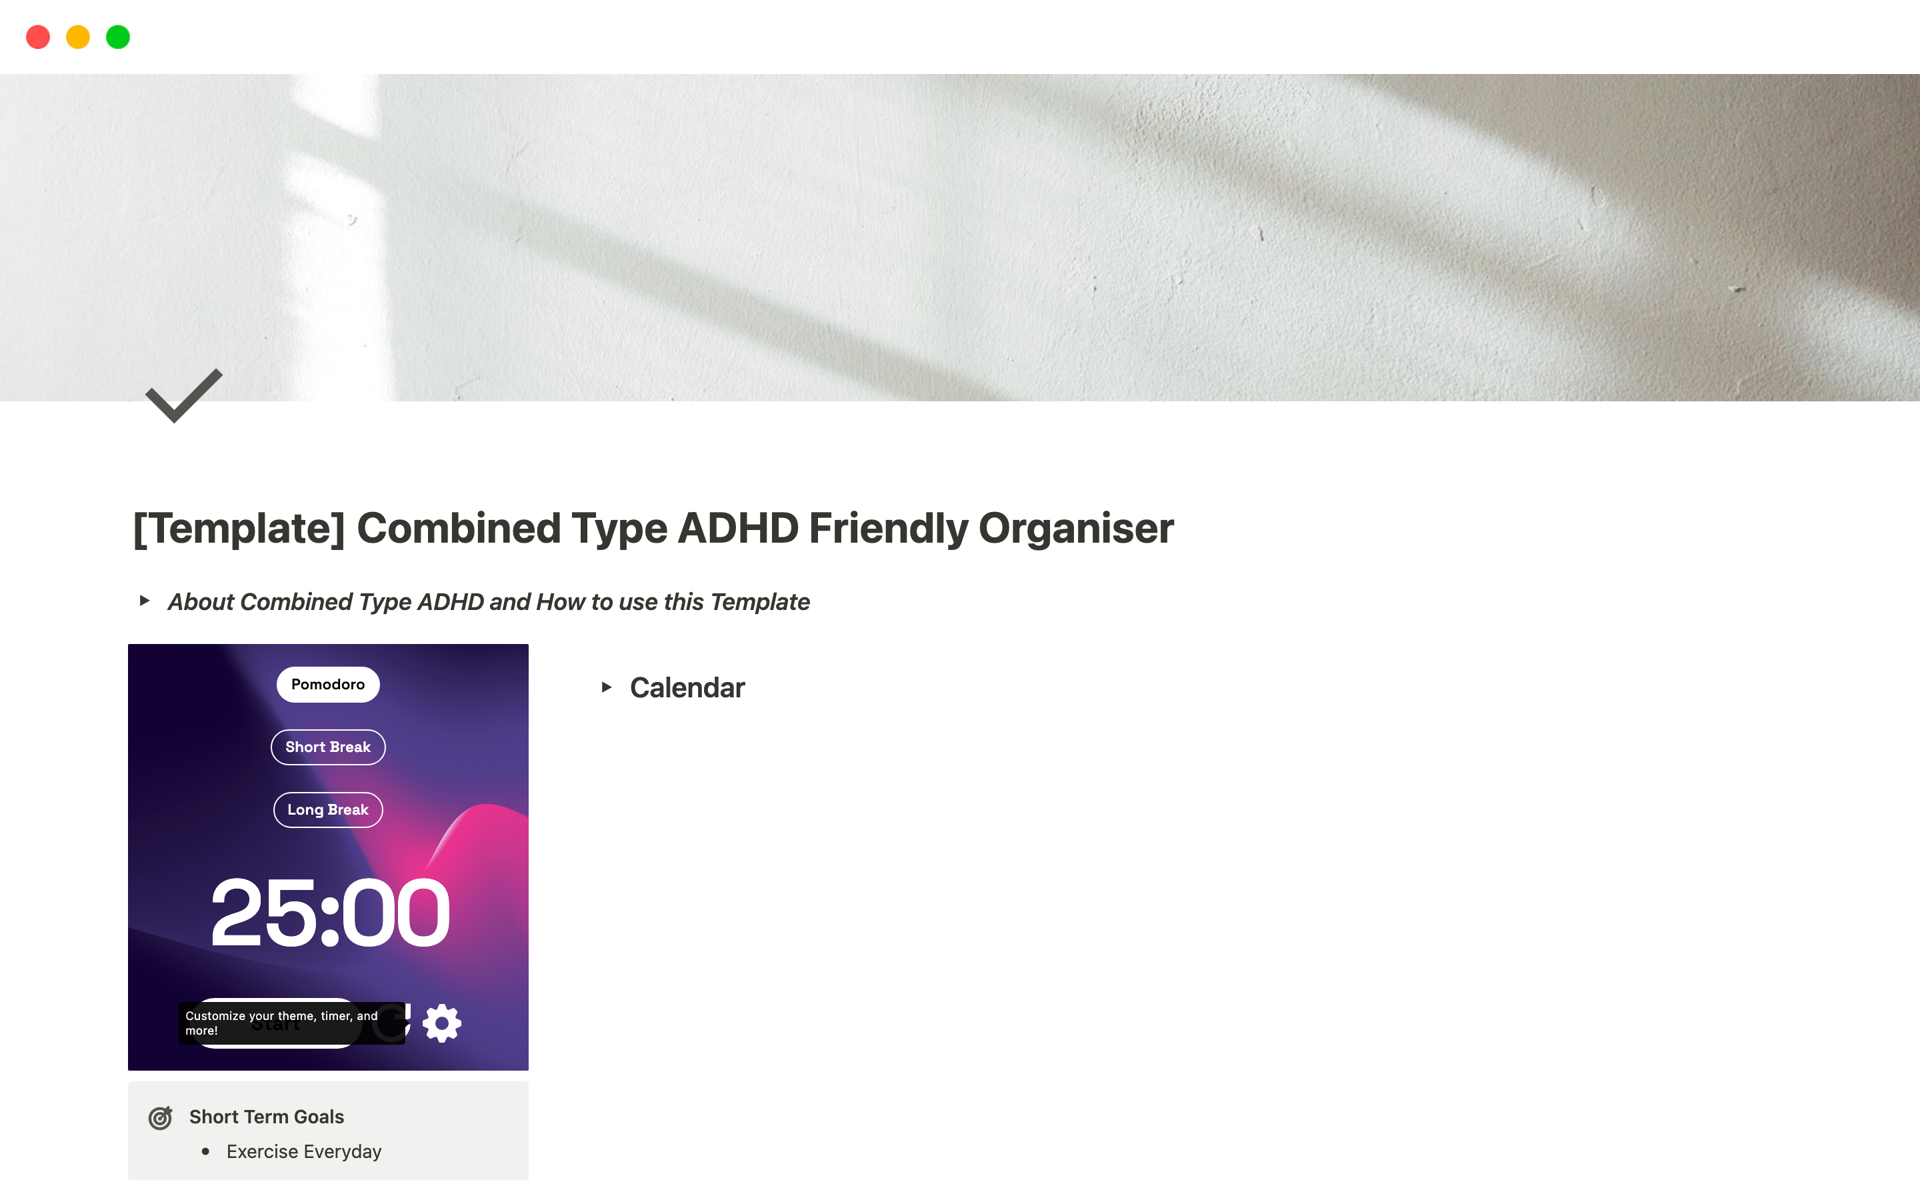 Vista previa de una plantilla para Combined Type ADHD Friendly Organiser